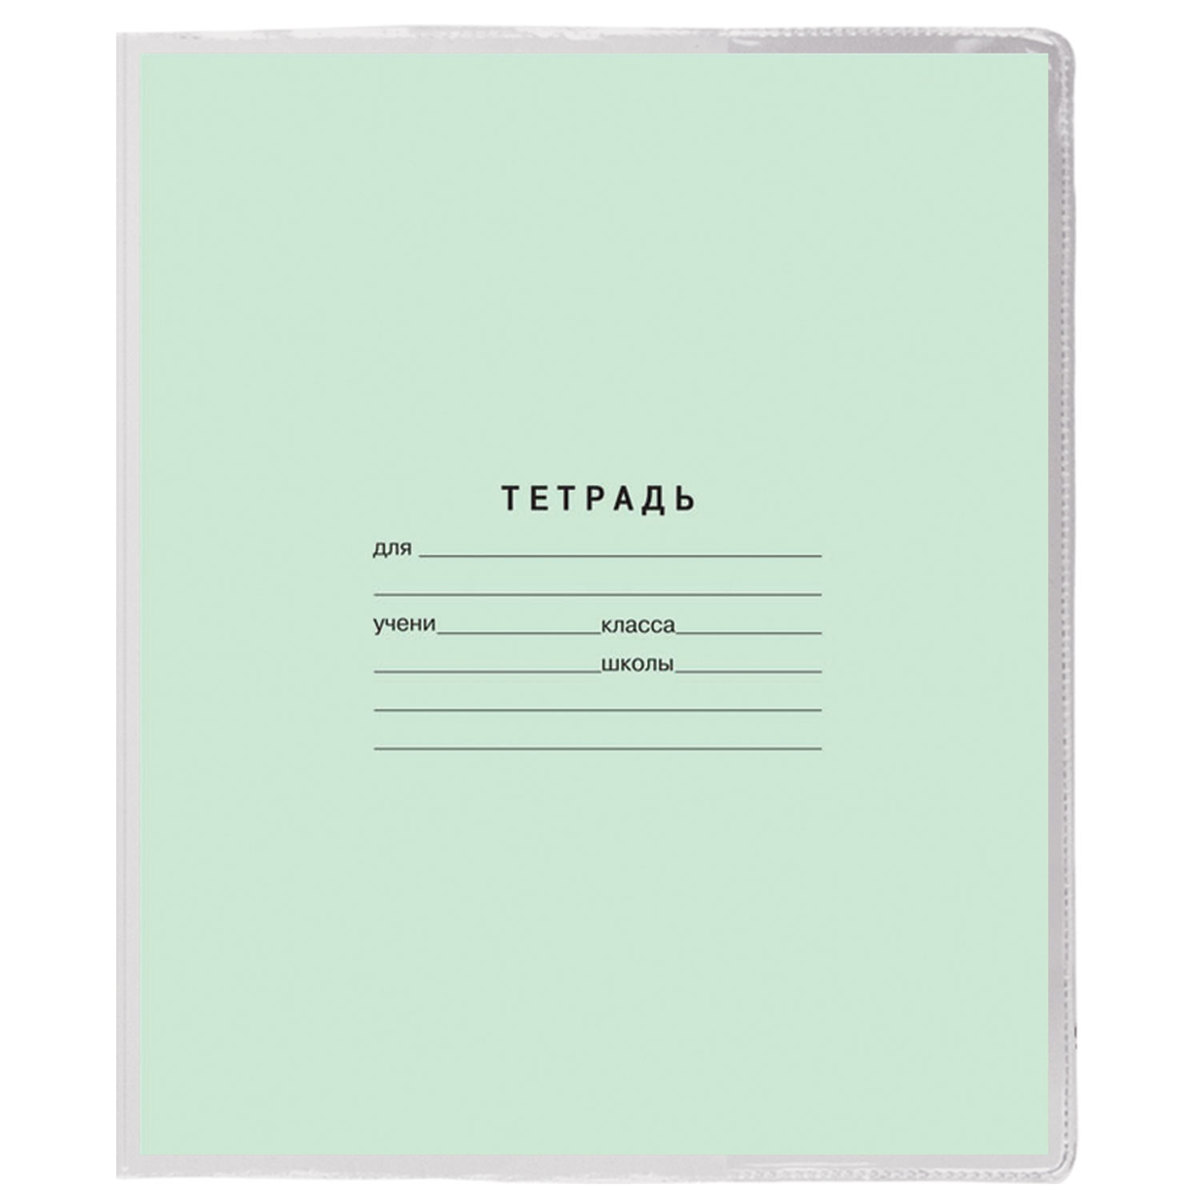 Обложки Пифагор для тетрадей и дневника 10 шт прозрачные - фото 8